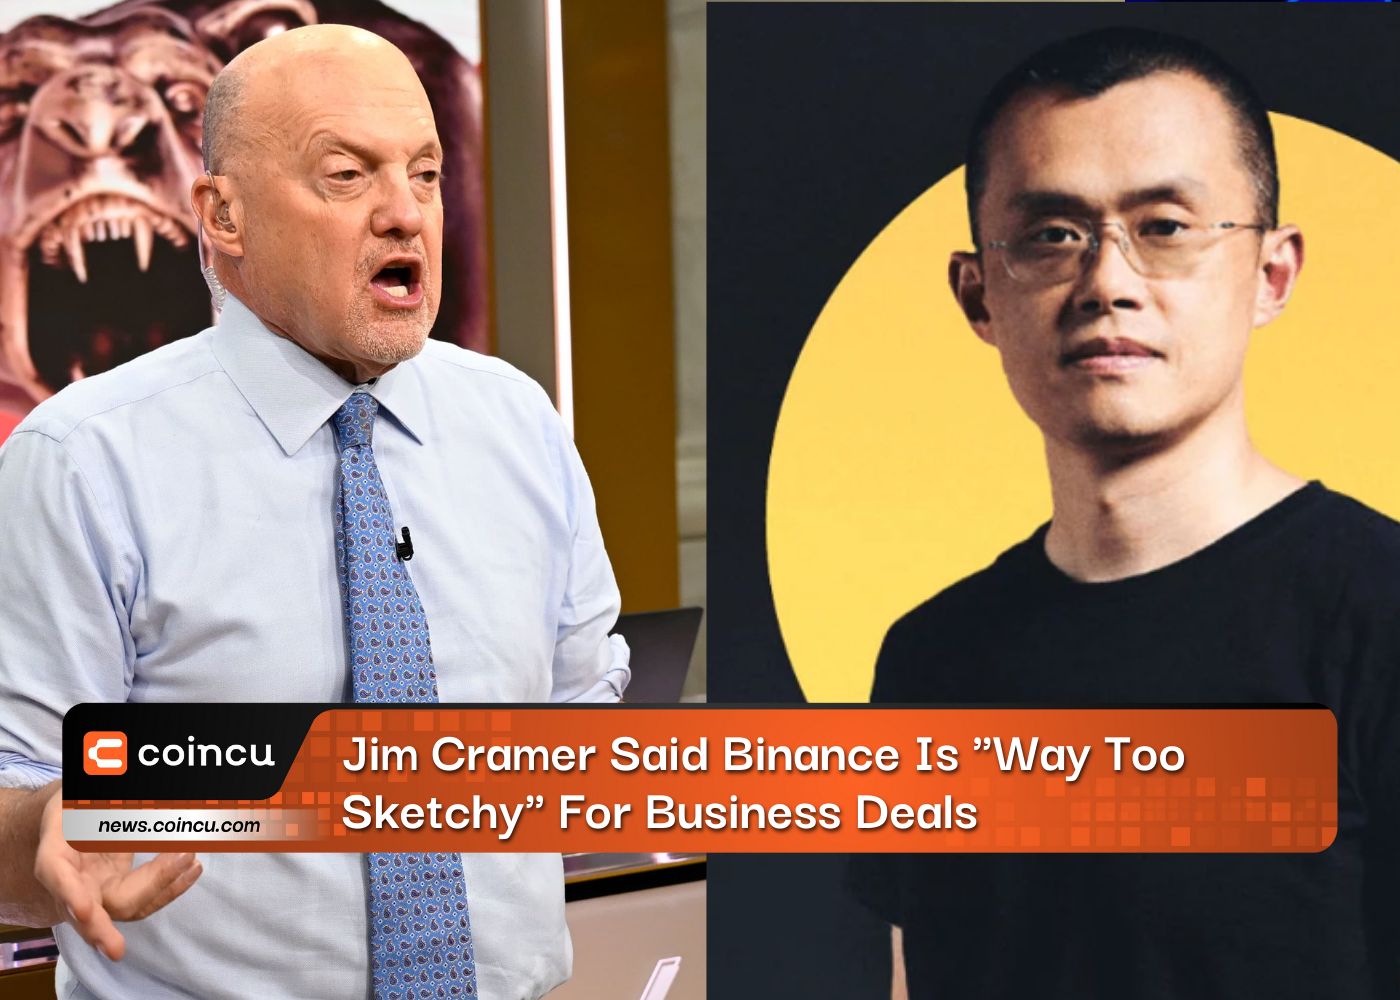 Jim Cramer cho rằng Binance “quá sơ sài” đối với các giao dịch kinh doanh